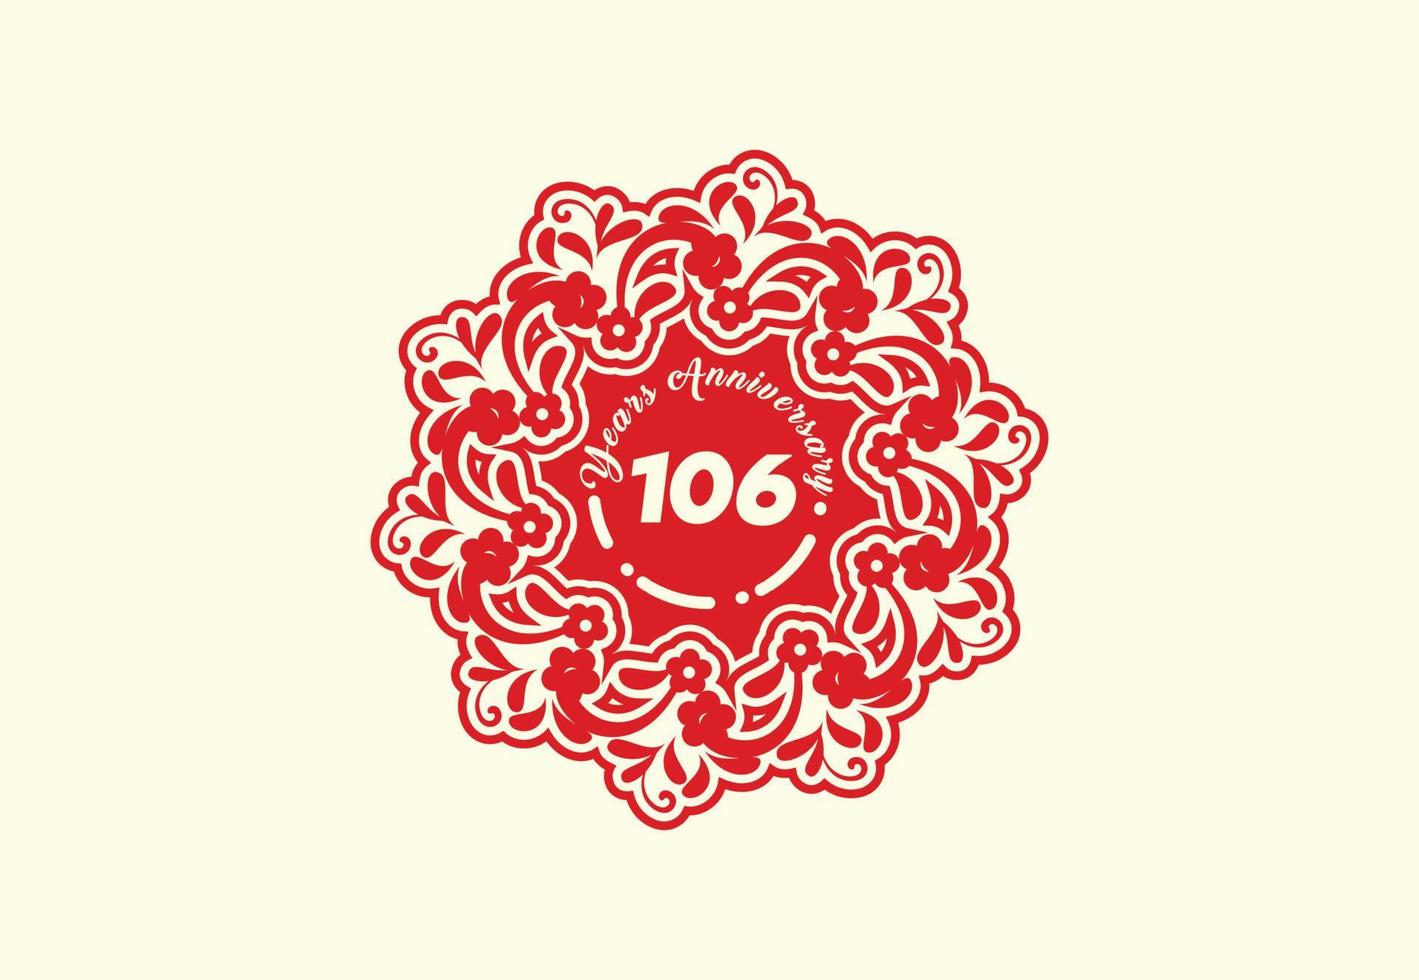 Conception du logo et de l'autocollant du 106e anniversaire vecteur